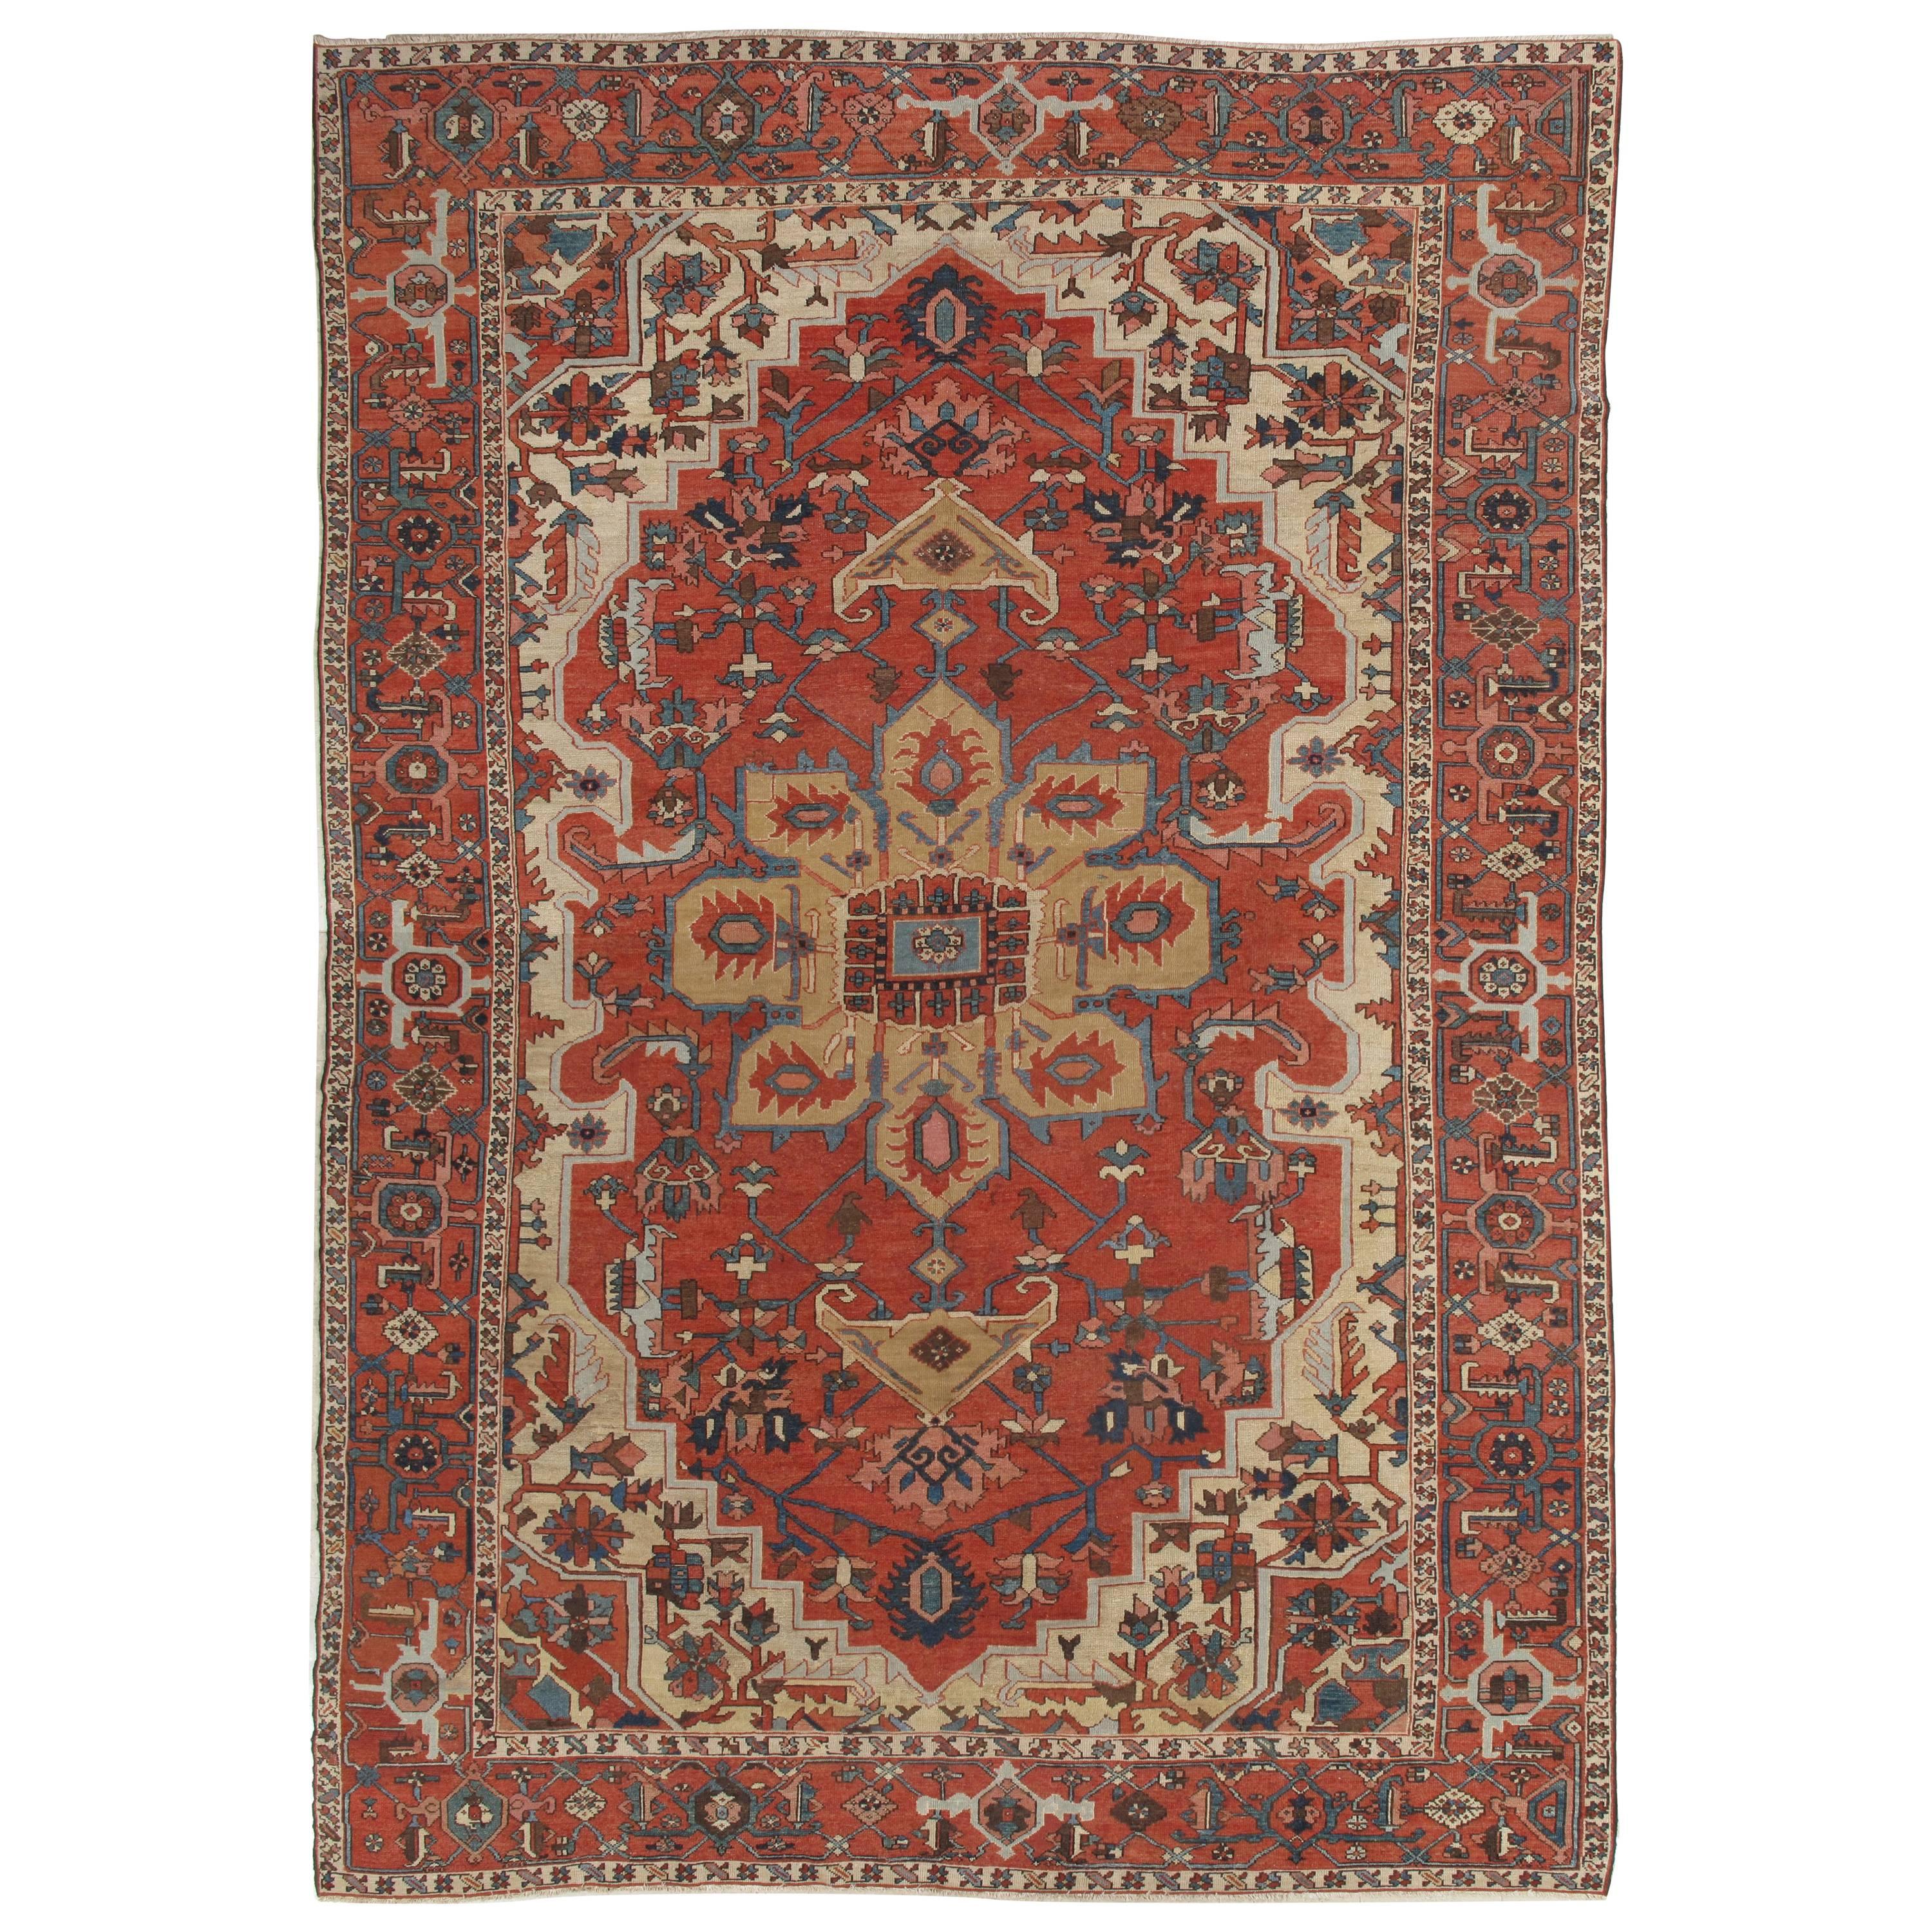 Antique Persian Handmade Wool Oriental Serapi Carpet, Rust, Gold, Light Blue